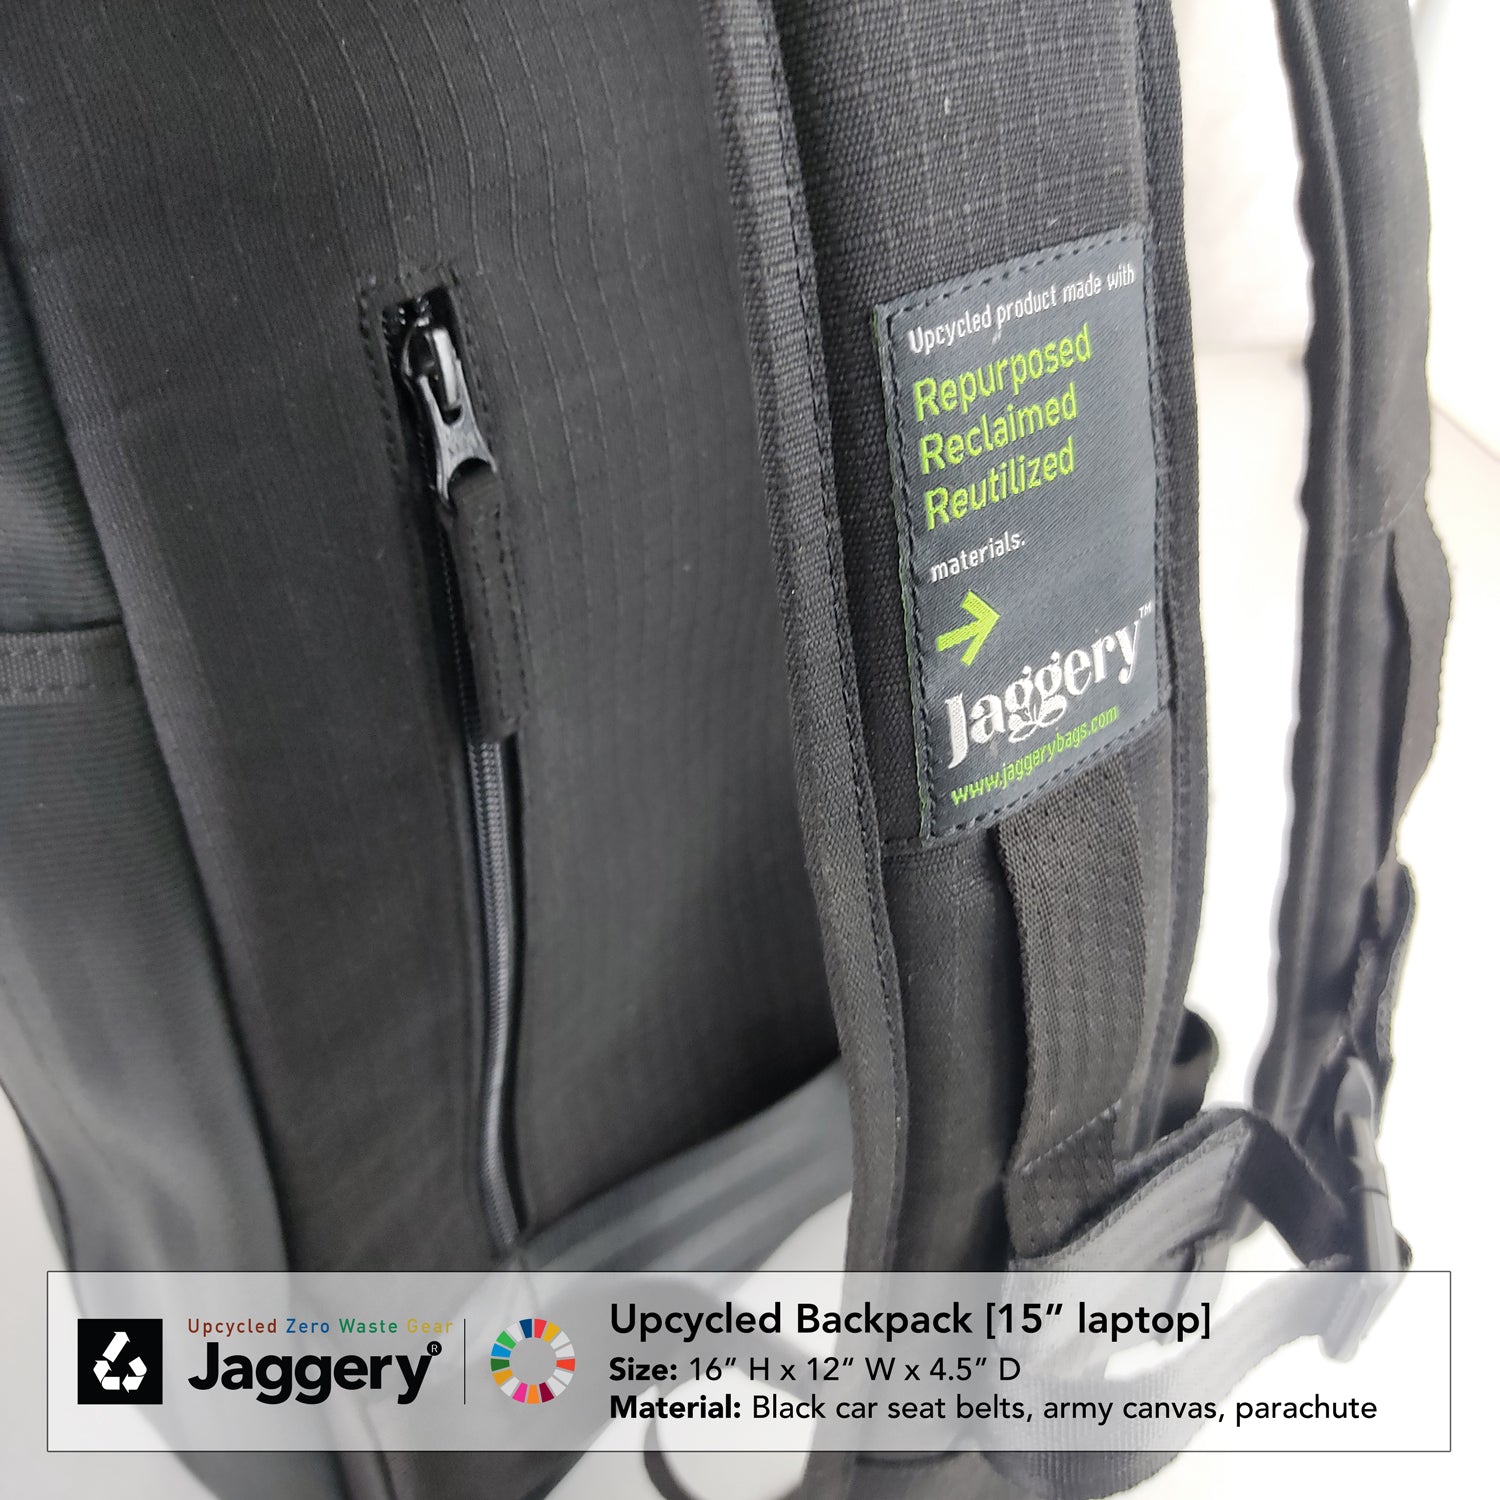 Pervasive Backpack in Black Car Seat Belts [15"laptop bag]